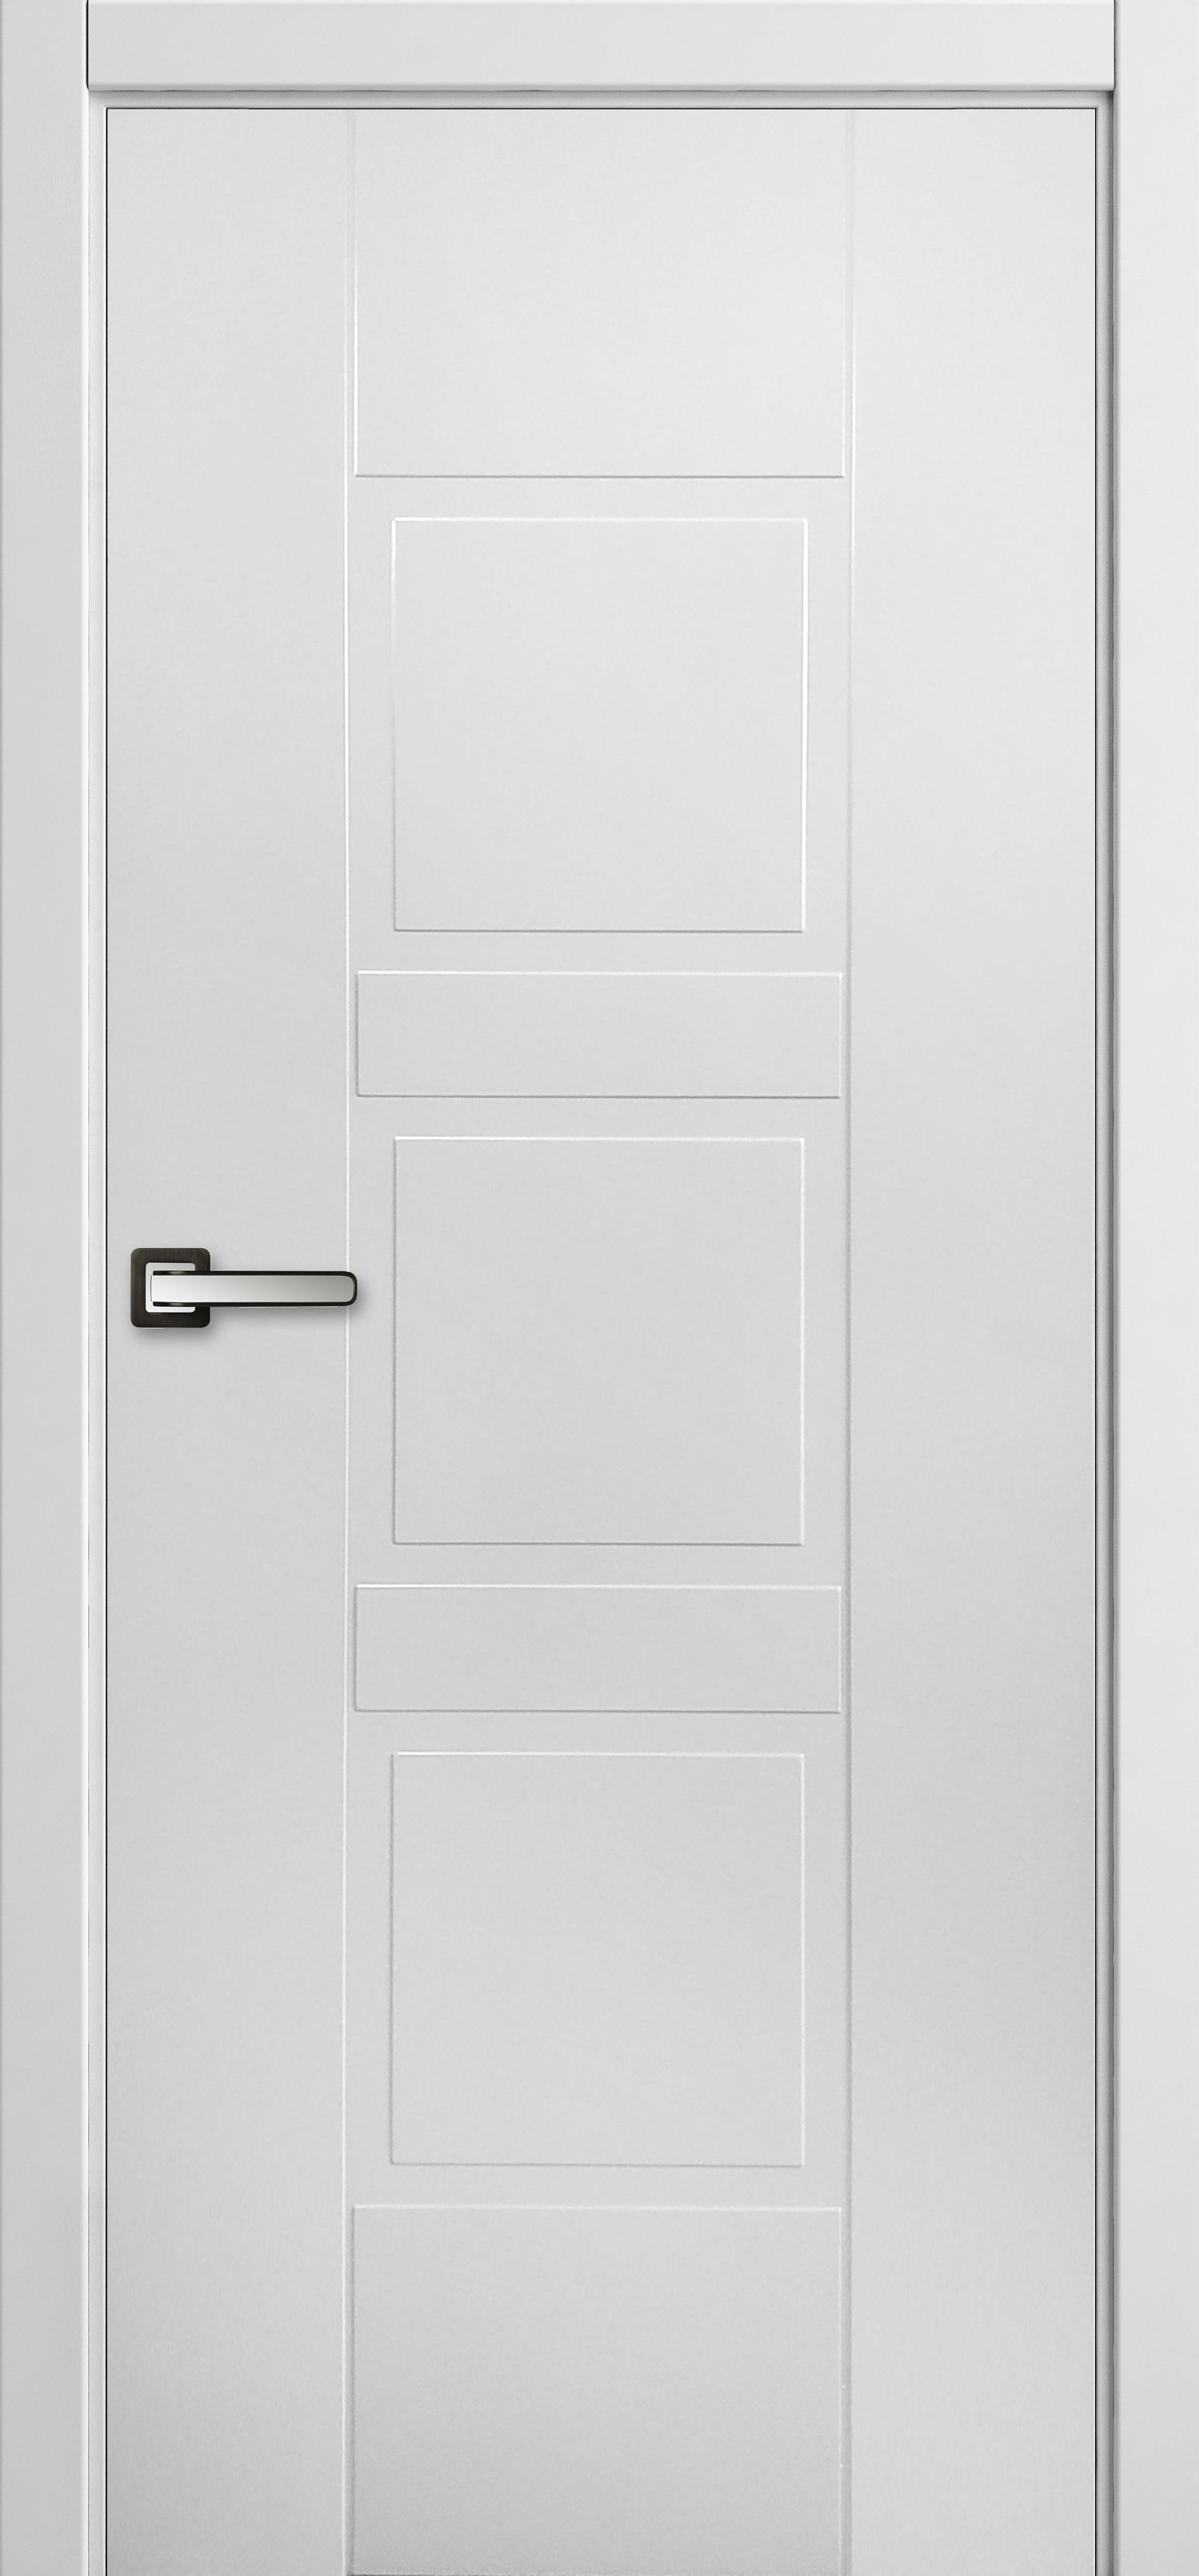 Двери межкомнатные белые эмаль купить. Межкомнатные двери Честер белая эмаль. Дверь Scandi 2p ПГ эмаль. Межкомнатная дверь EMALEX c2. Дверь EMALEX Ice 2.